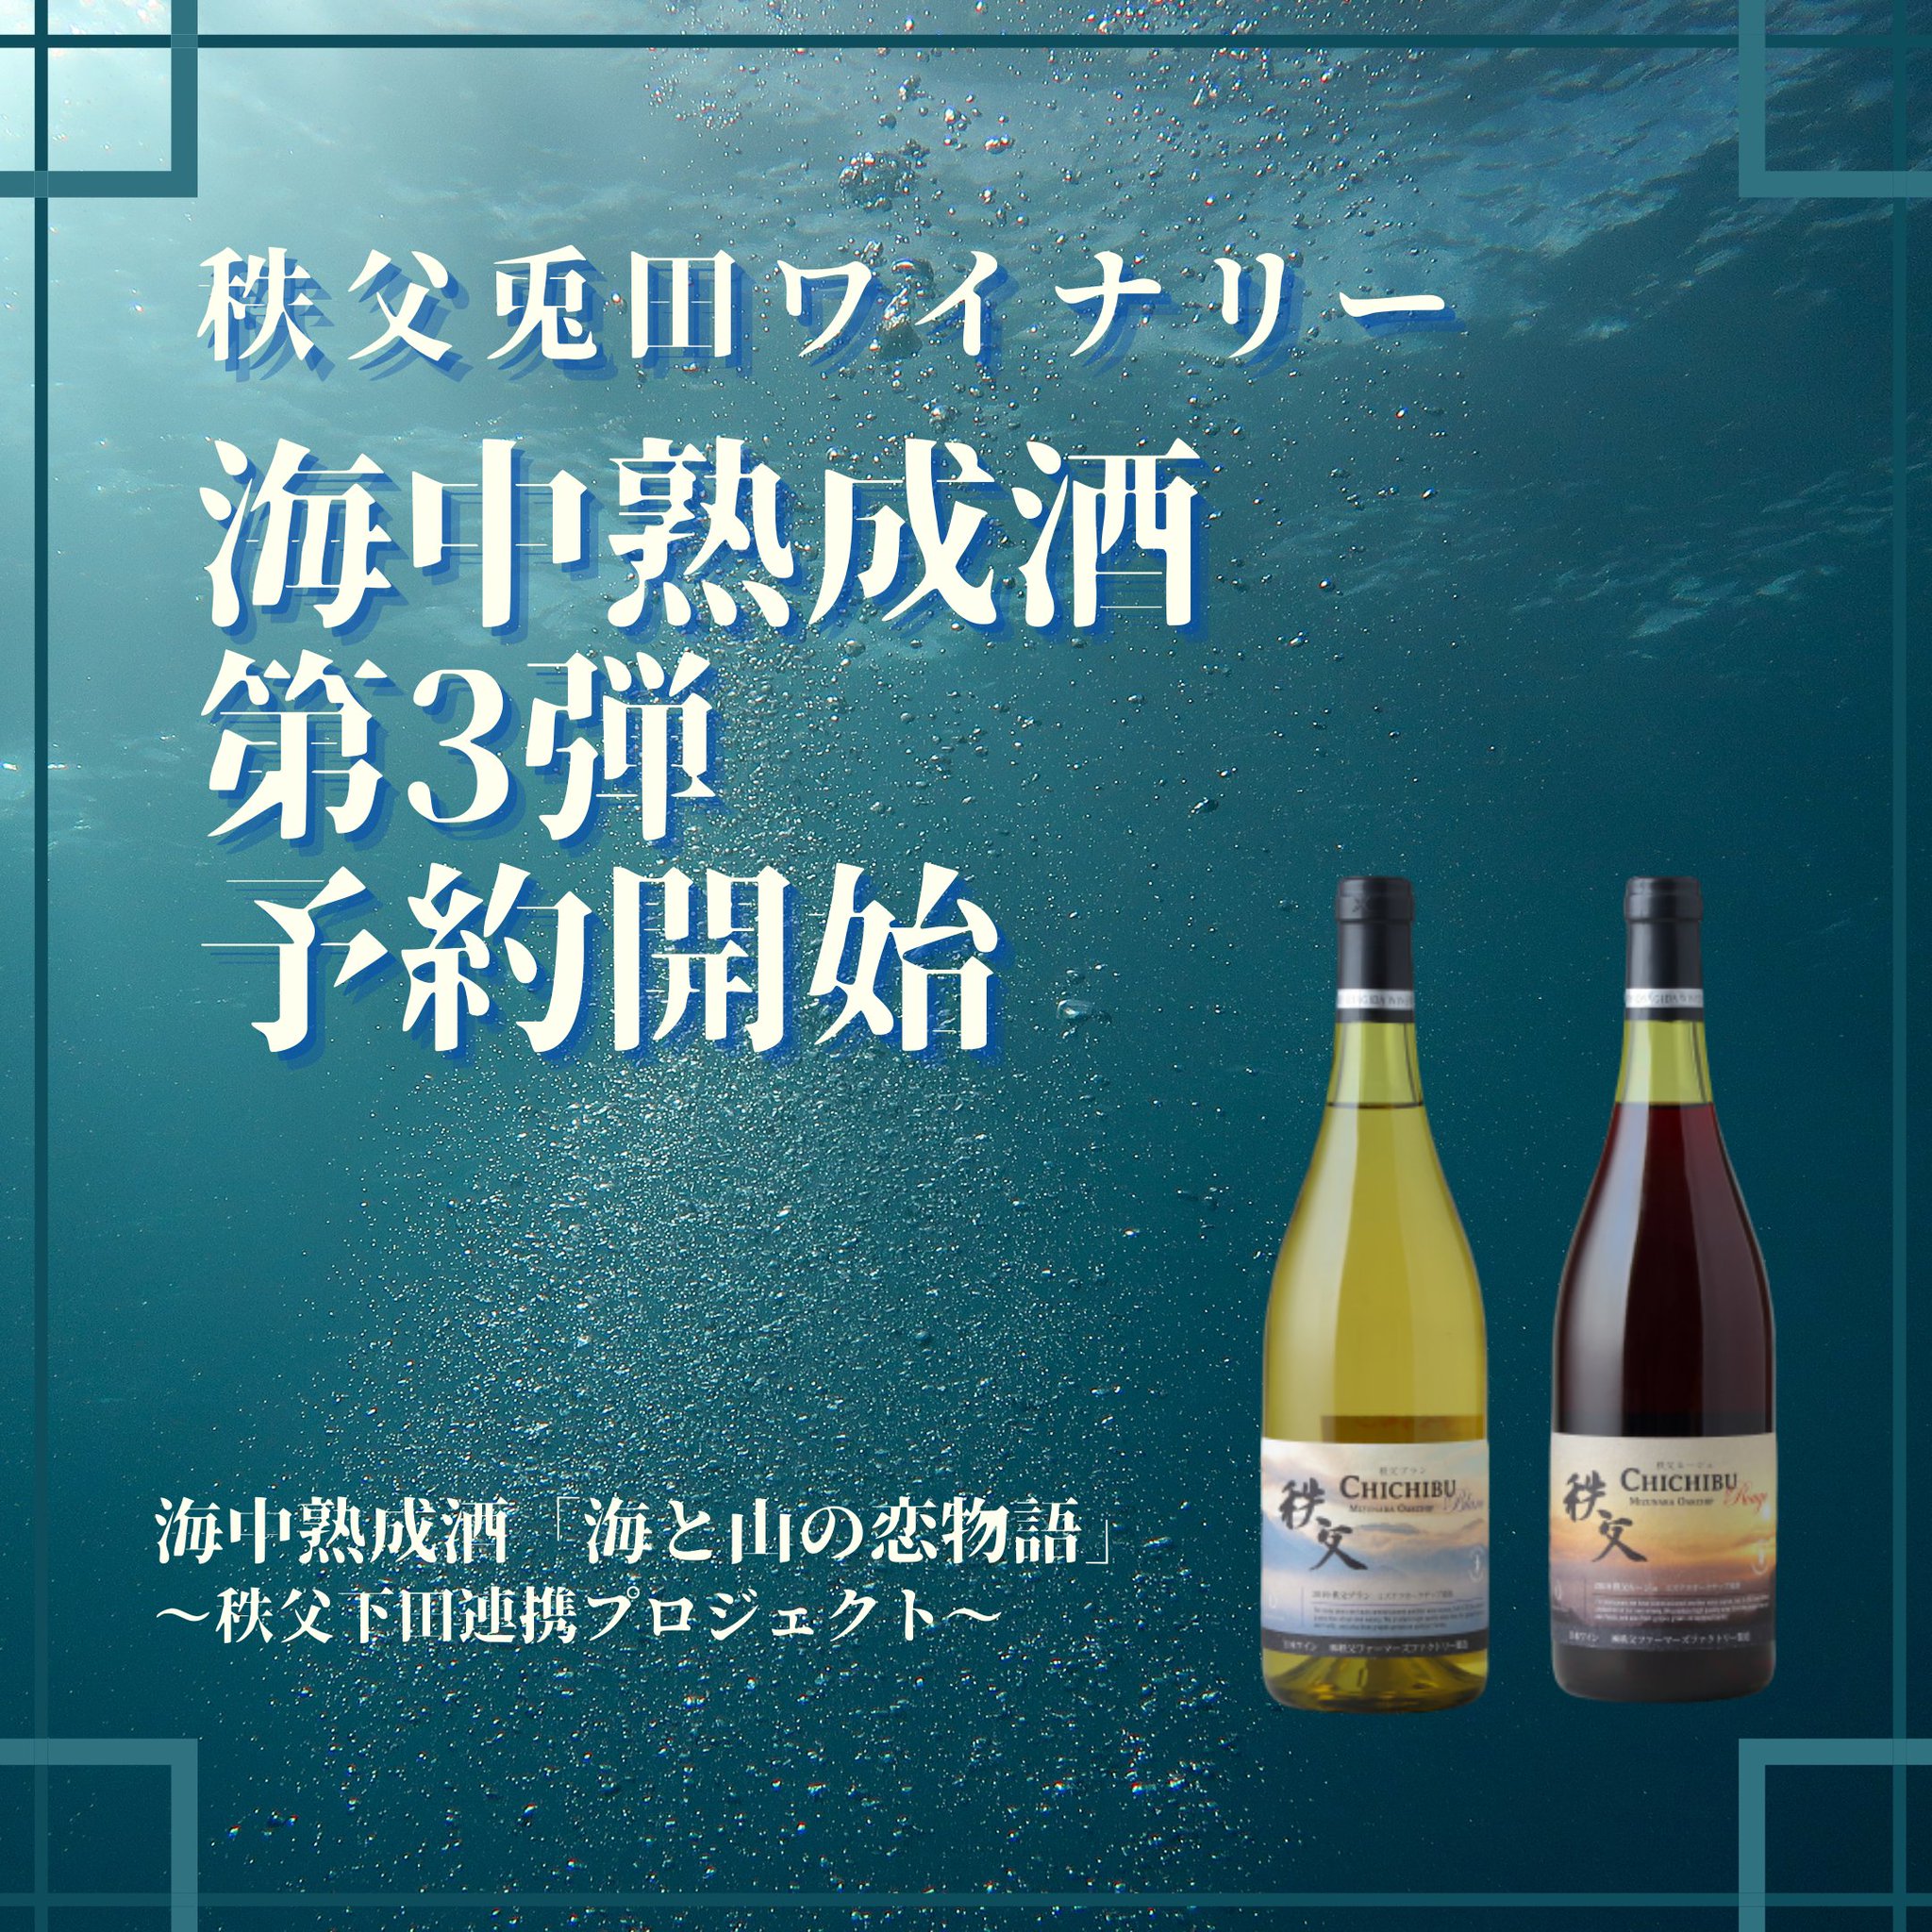 イチローズモルト 海中熟成酒 2021年 秩父✕下田プロジェクト - ウイスキー